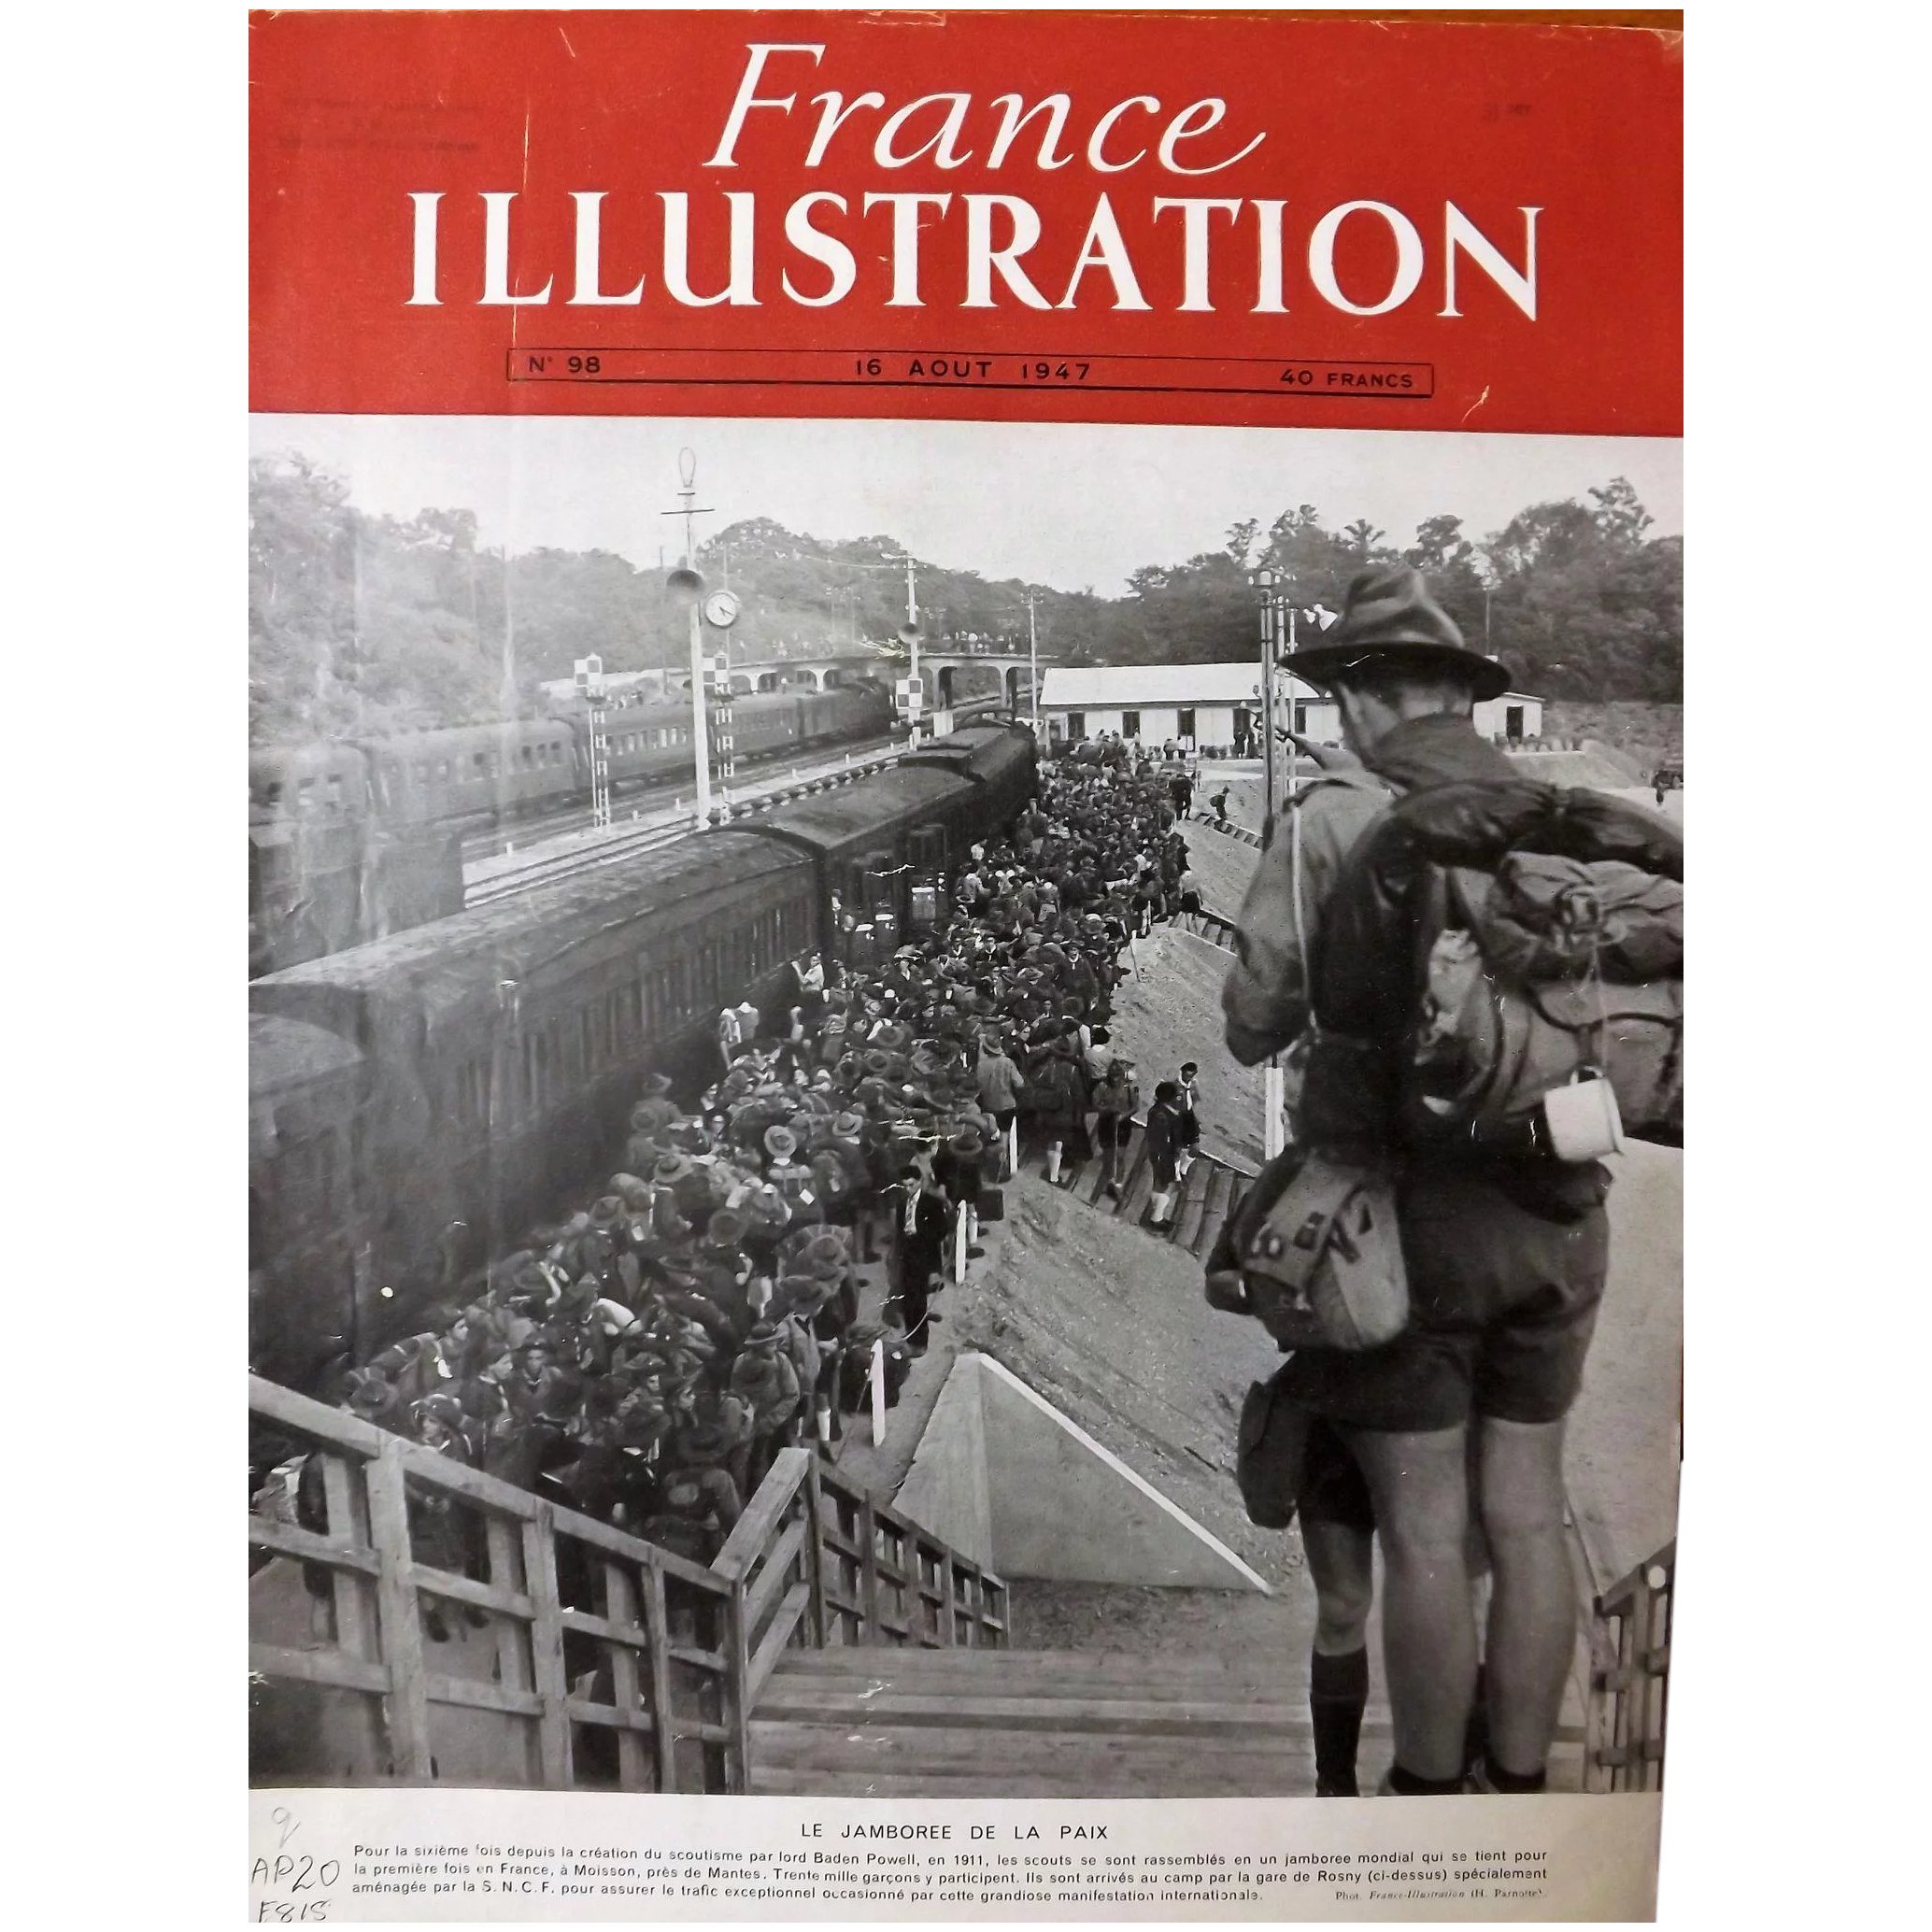 Le Jamboree De La Paix 1947- Front Cover of French Magazine L ' Illustration 16 Aout 1947